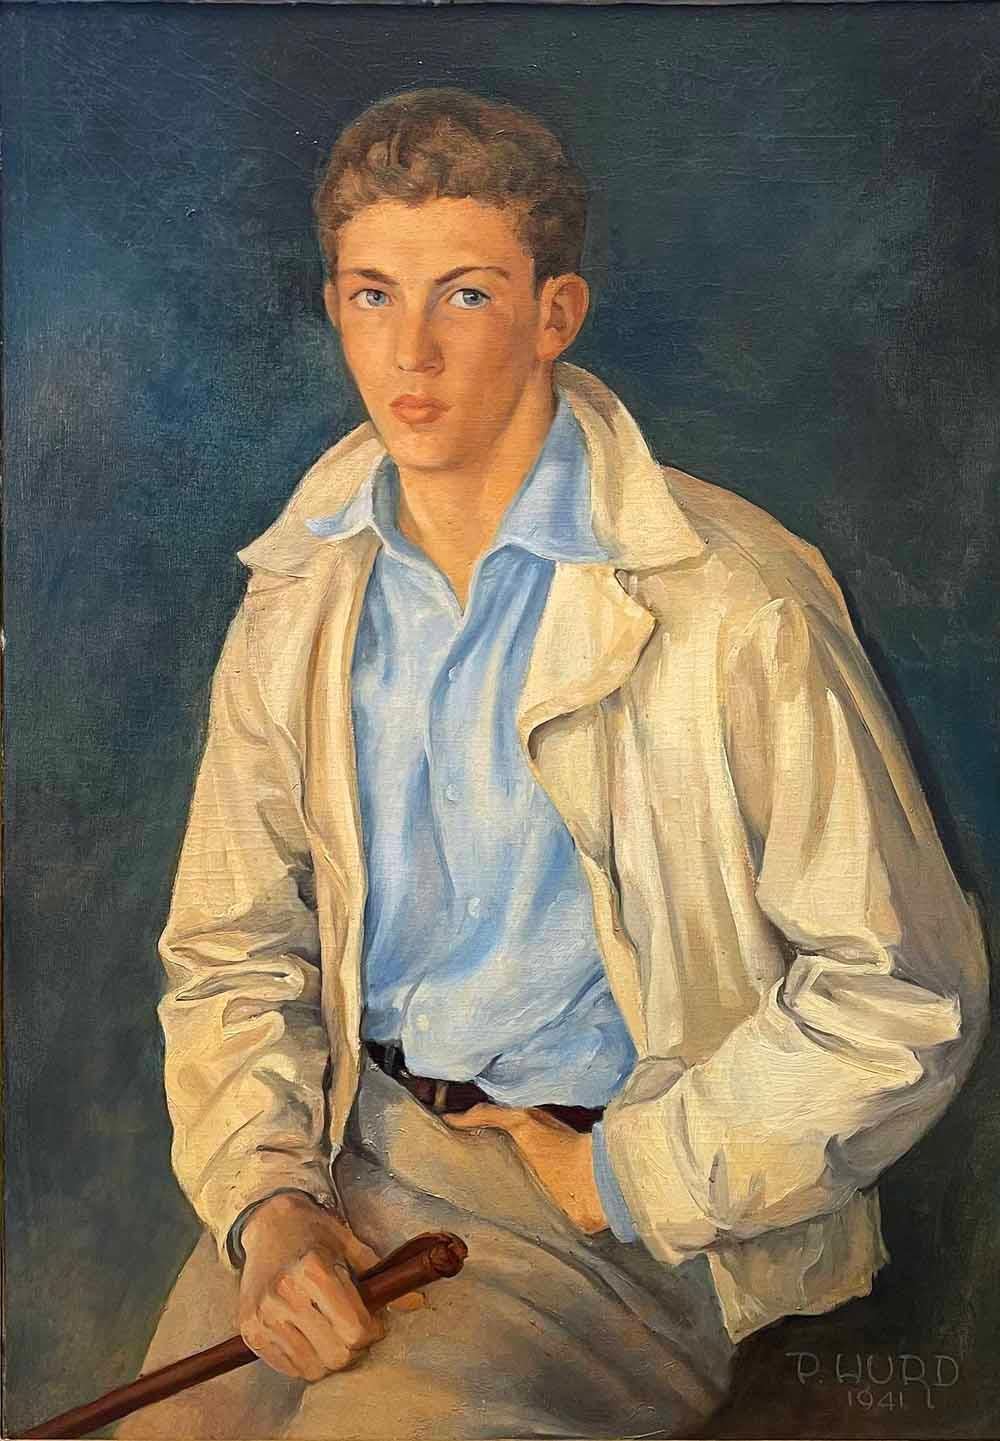 Peut-être le plus beau portrait que nous ayons jamais proposé, cette représentation d'un jeune jockey en 1941, au teint chaud et éclatant et aux yeux bleus faisant écho à la couleur de sa chemise, a été peinte par Peter Hurd, l'un des artistes les